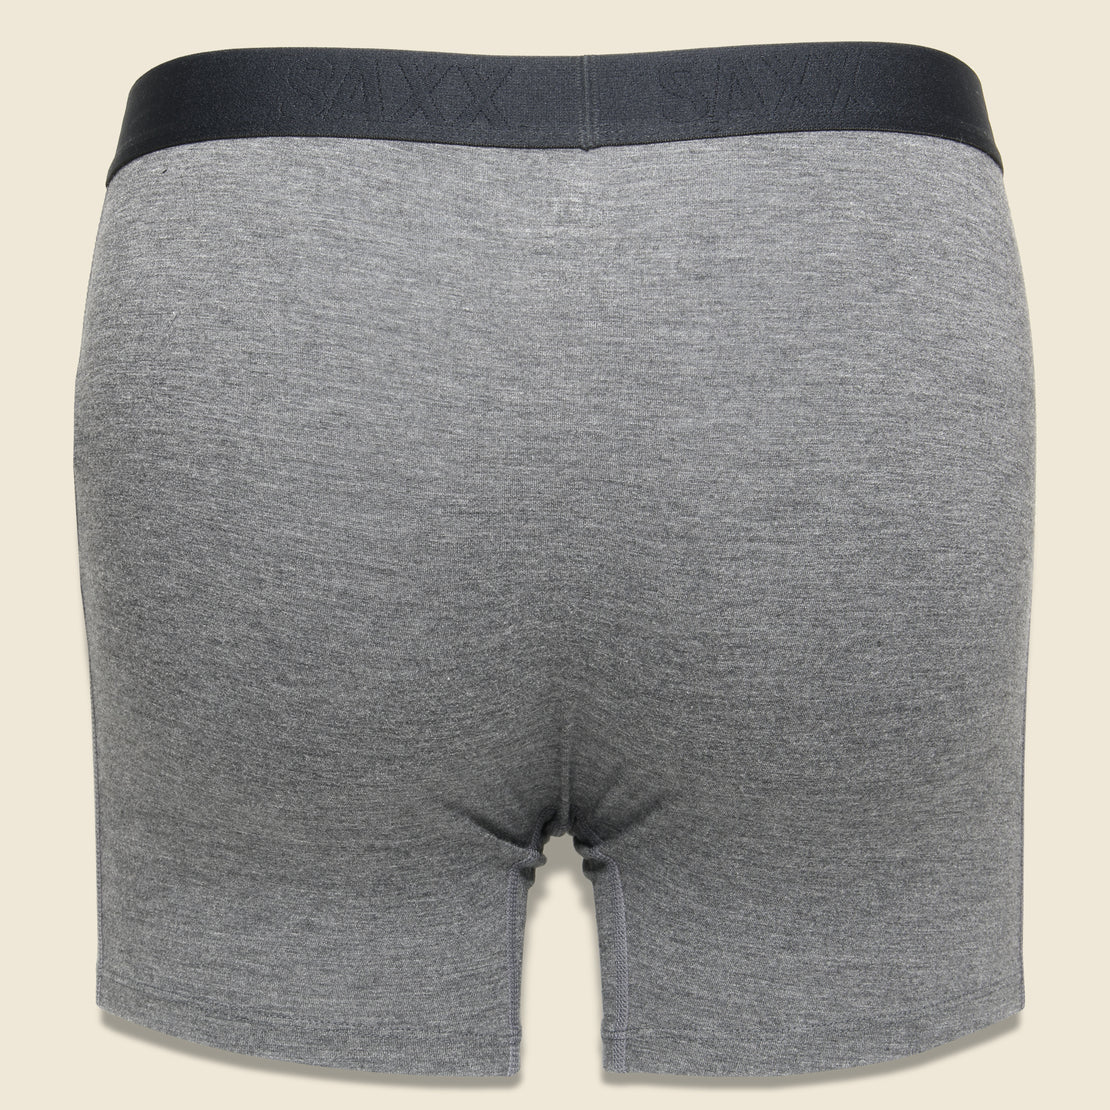 Vibe Boxer Brief - Graphite - SAXX - STAG Provisions - Accessories - Underwear